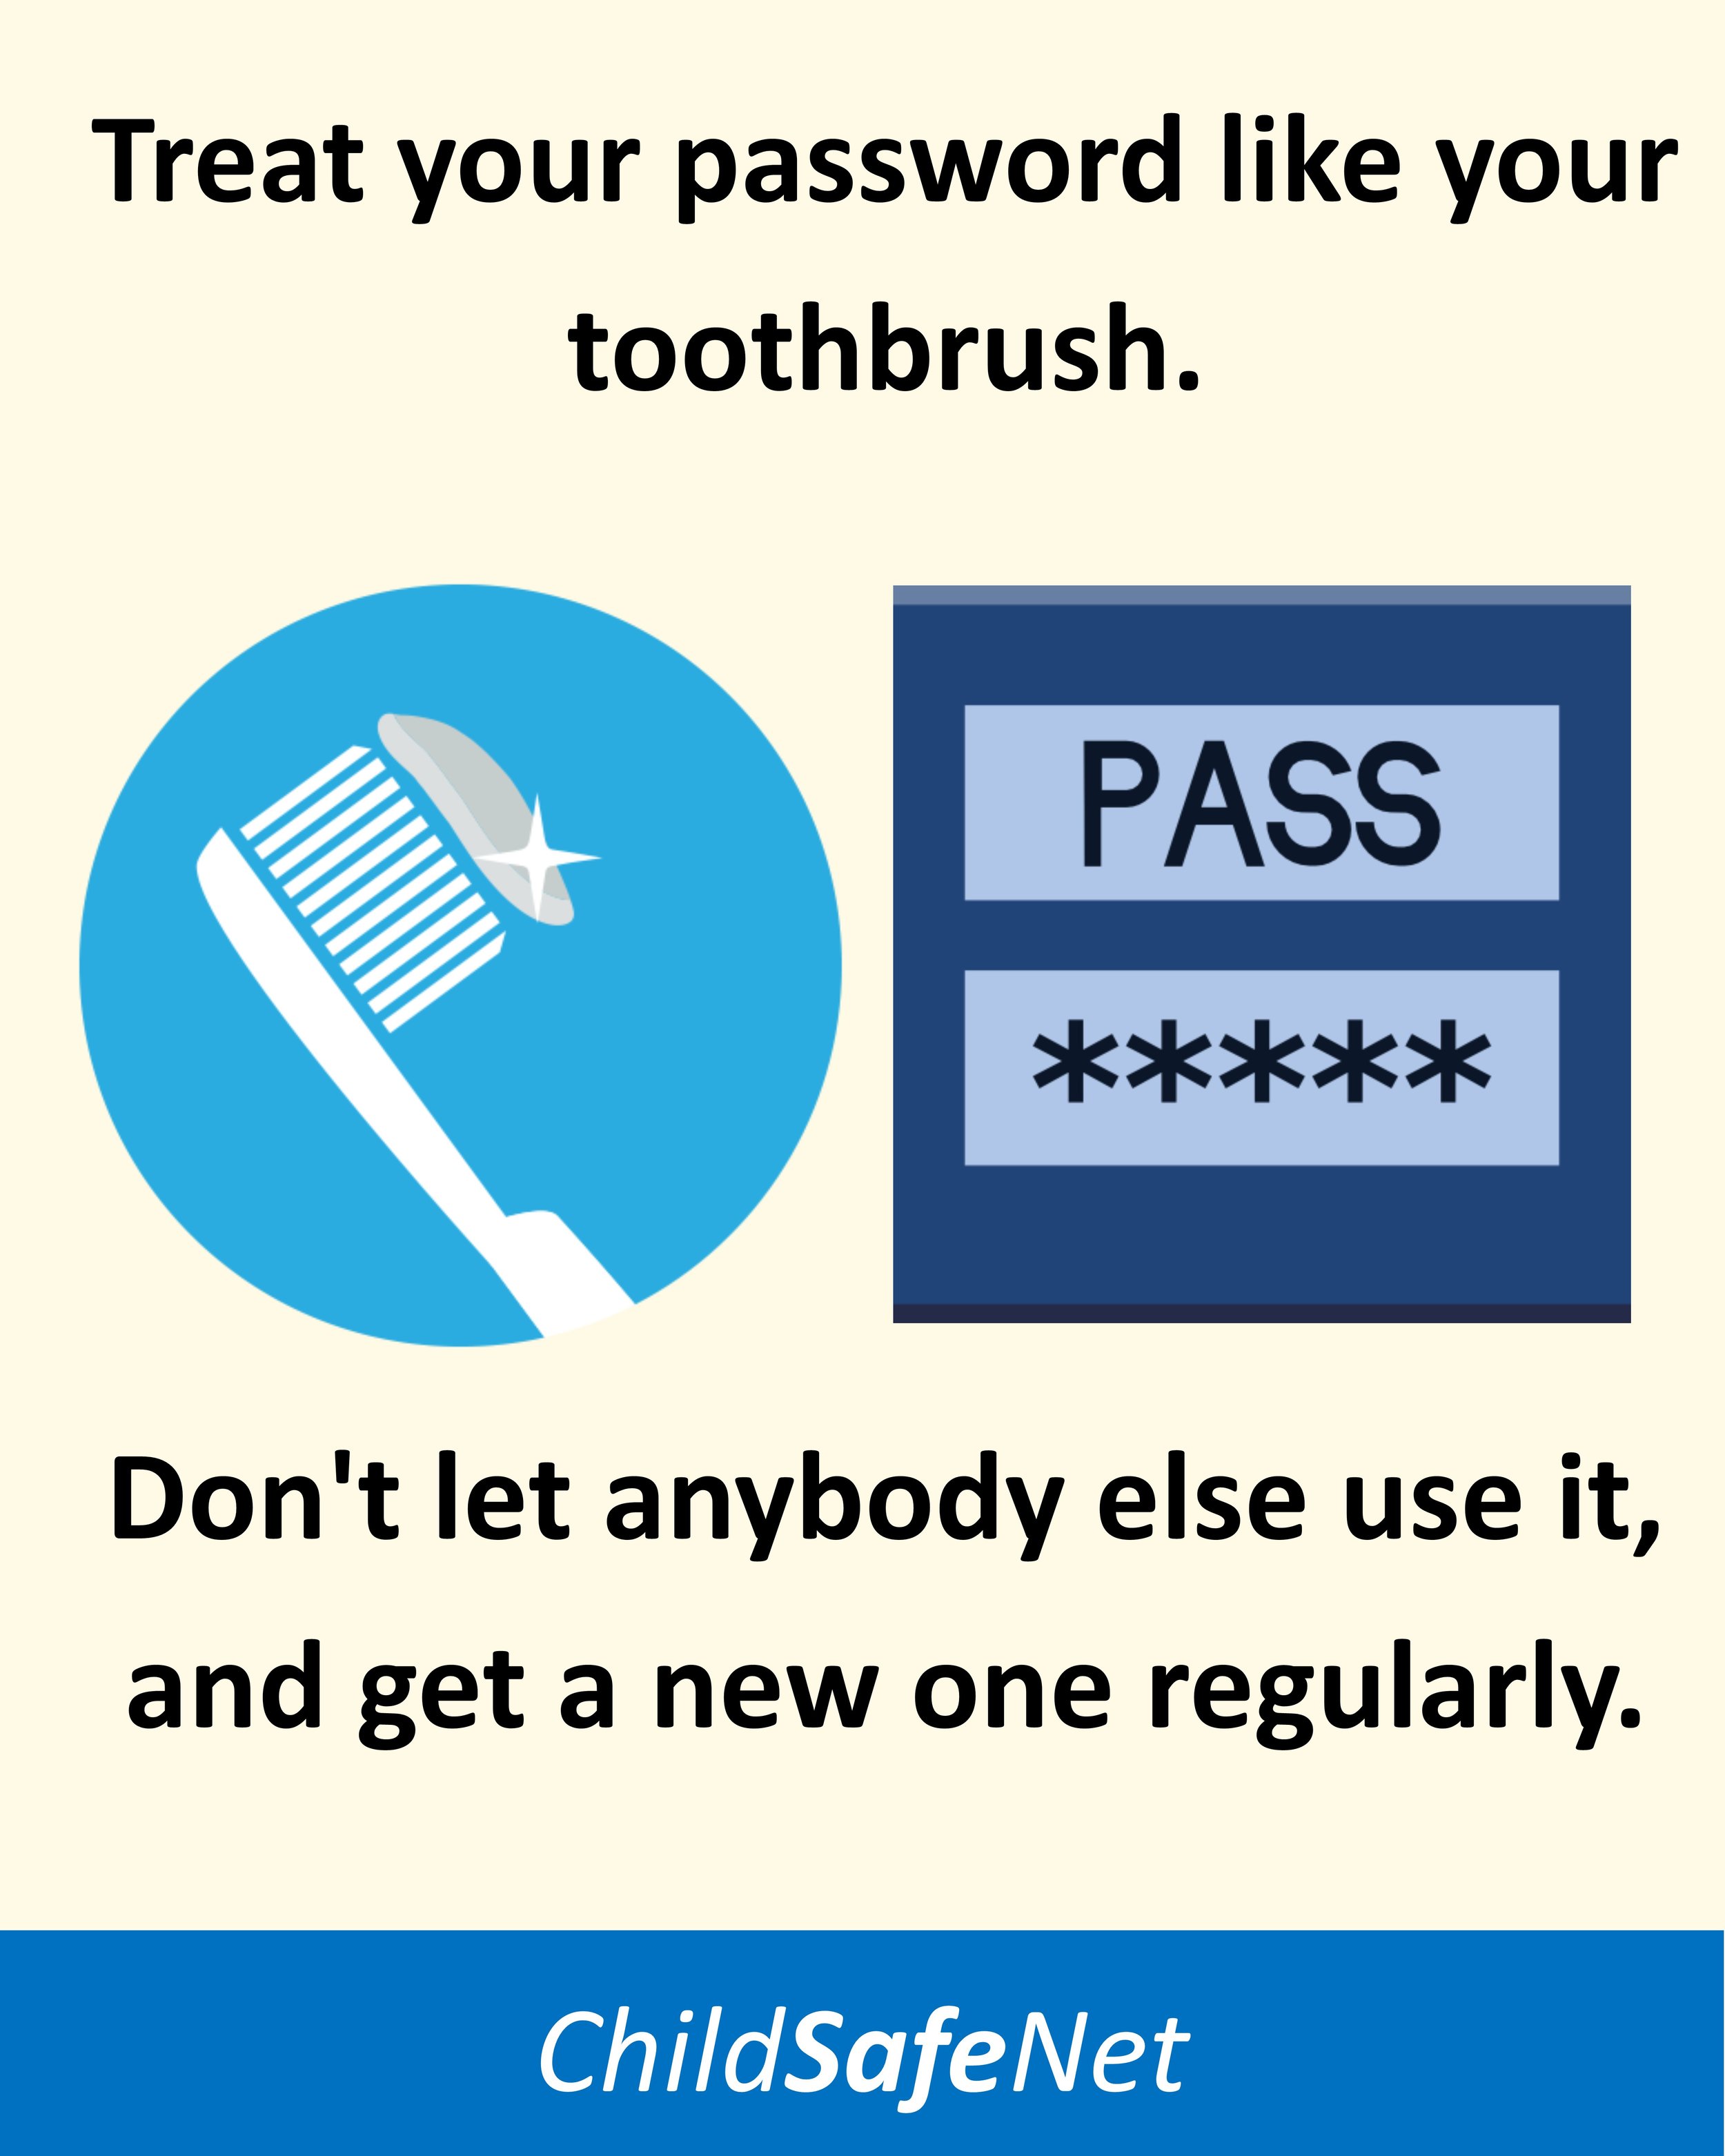 Toothbrush & password.jpg